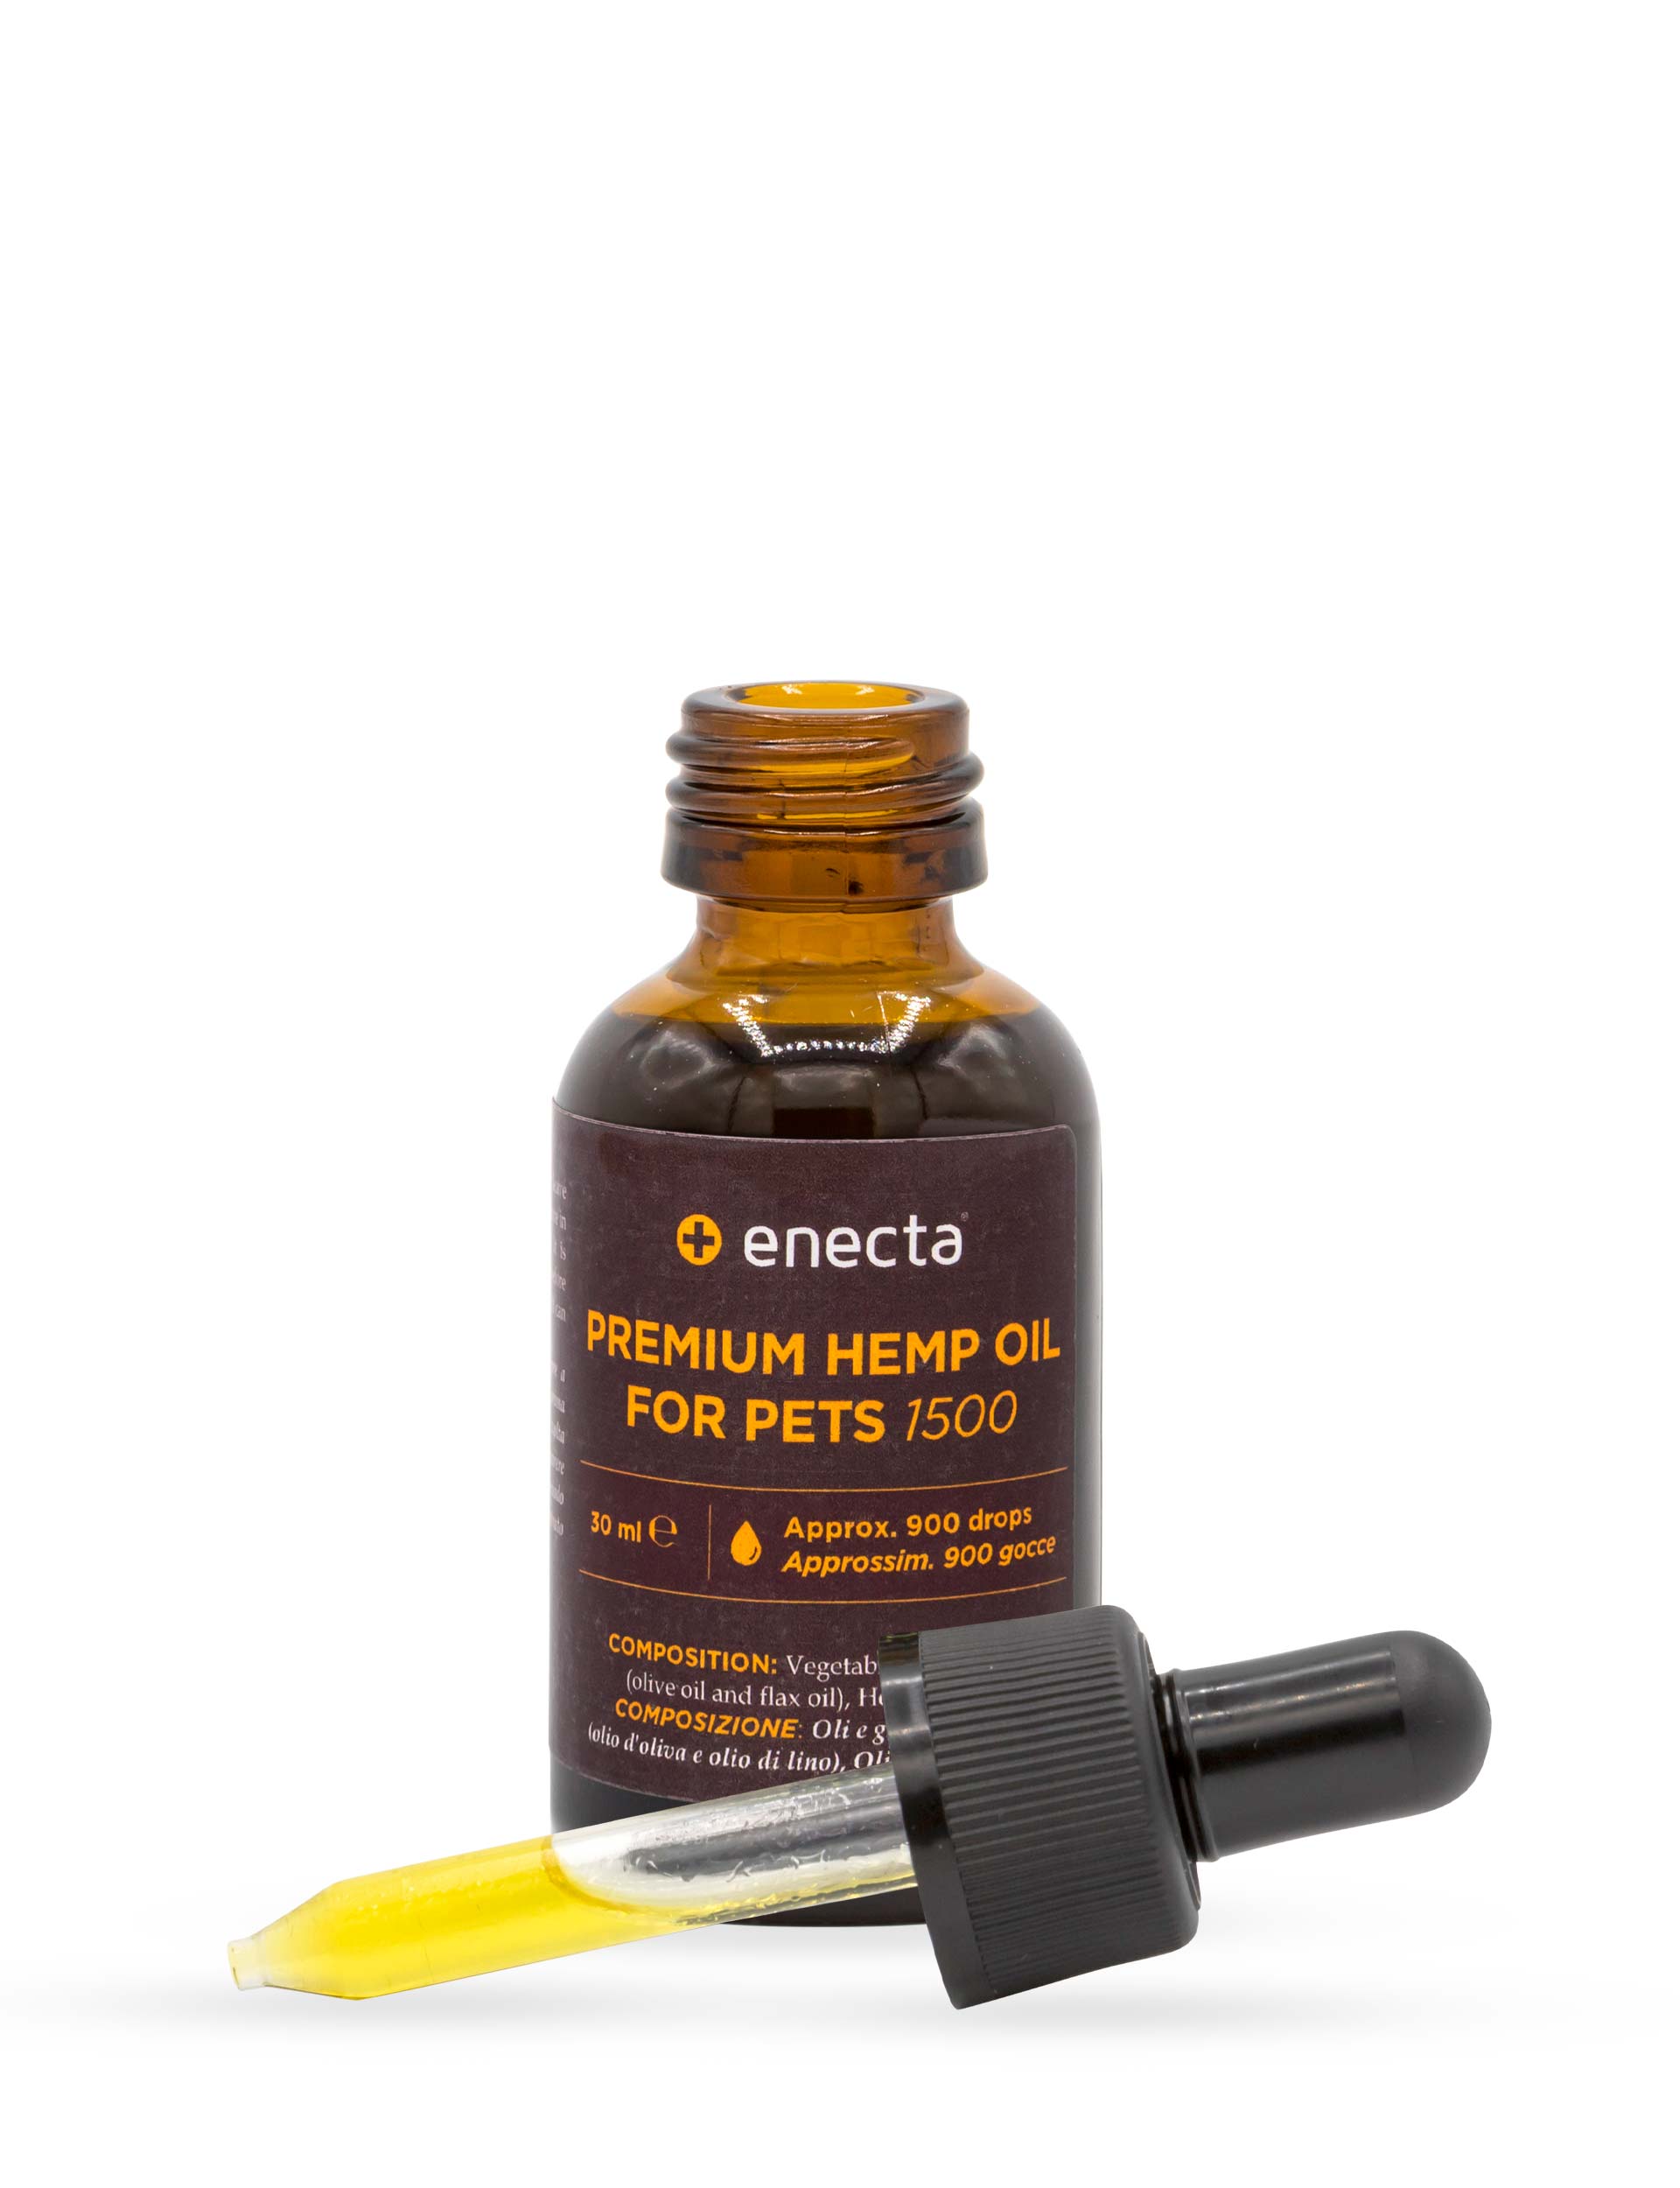 Premium Hemp Oil for Pets - 1500 mg, 30 ml-Enecta.en